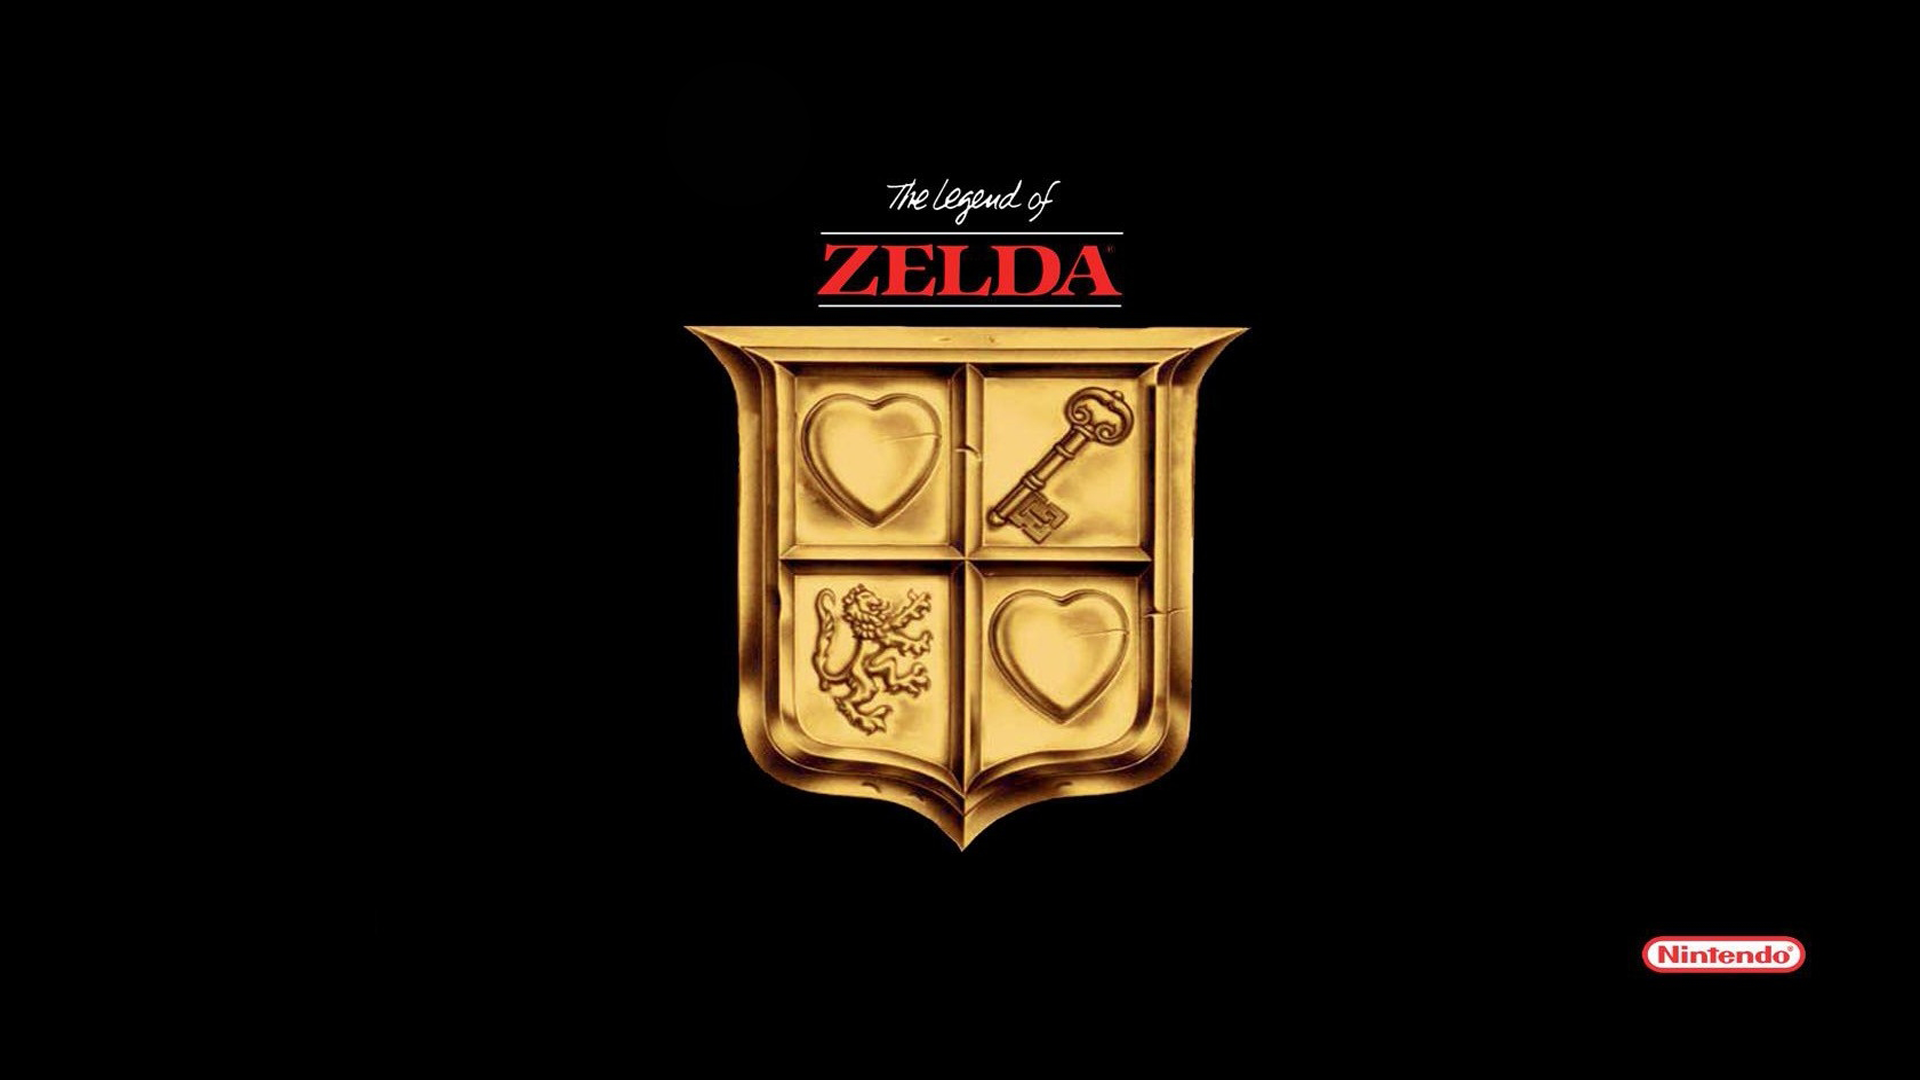 Let’s Play The Legend of Zelda